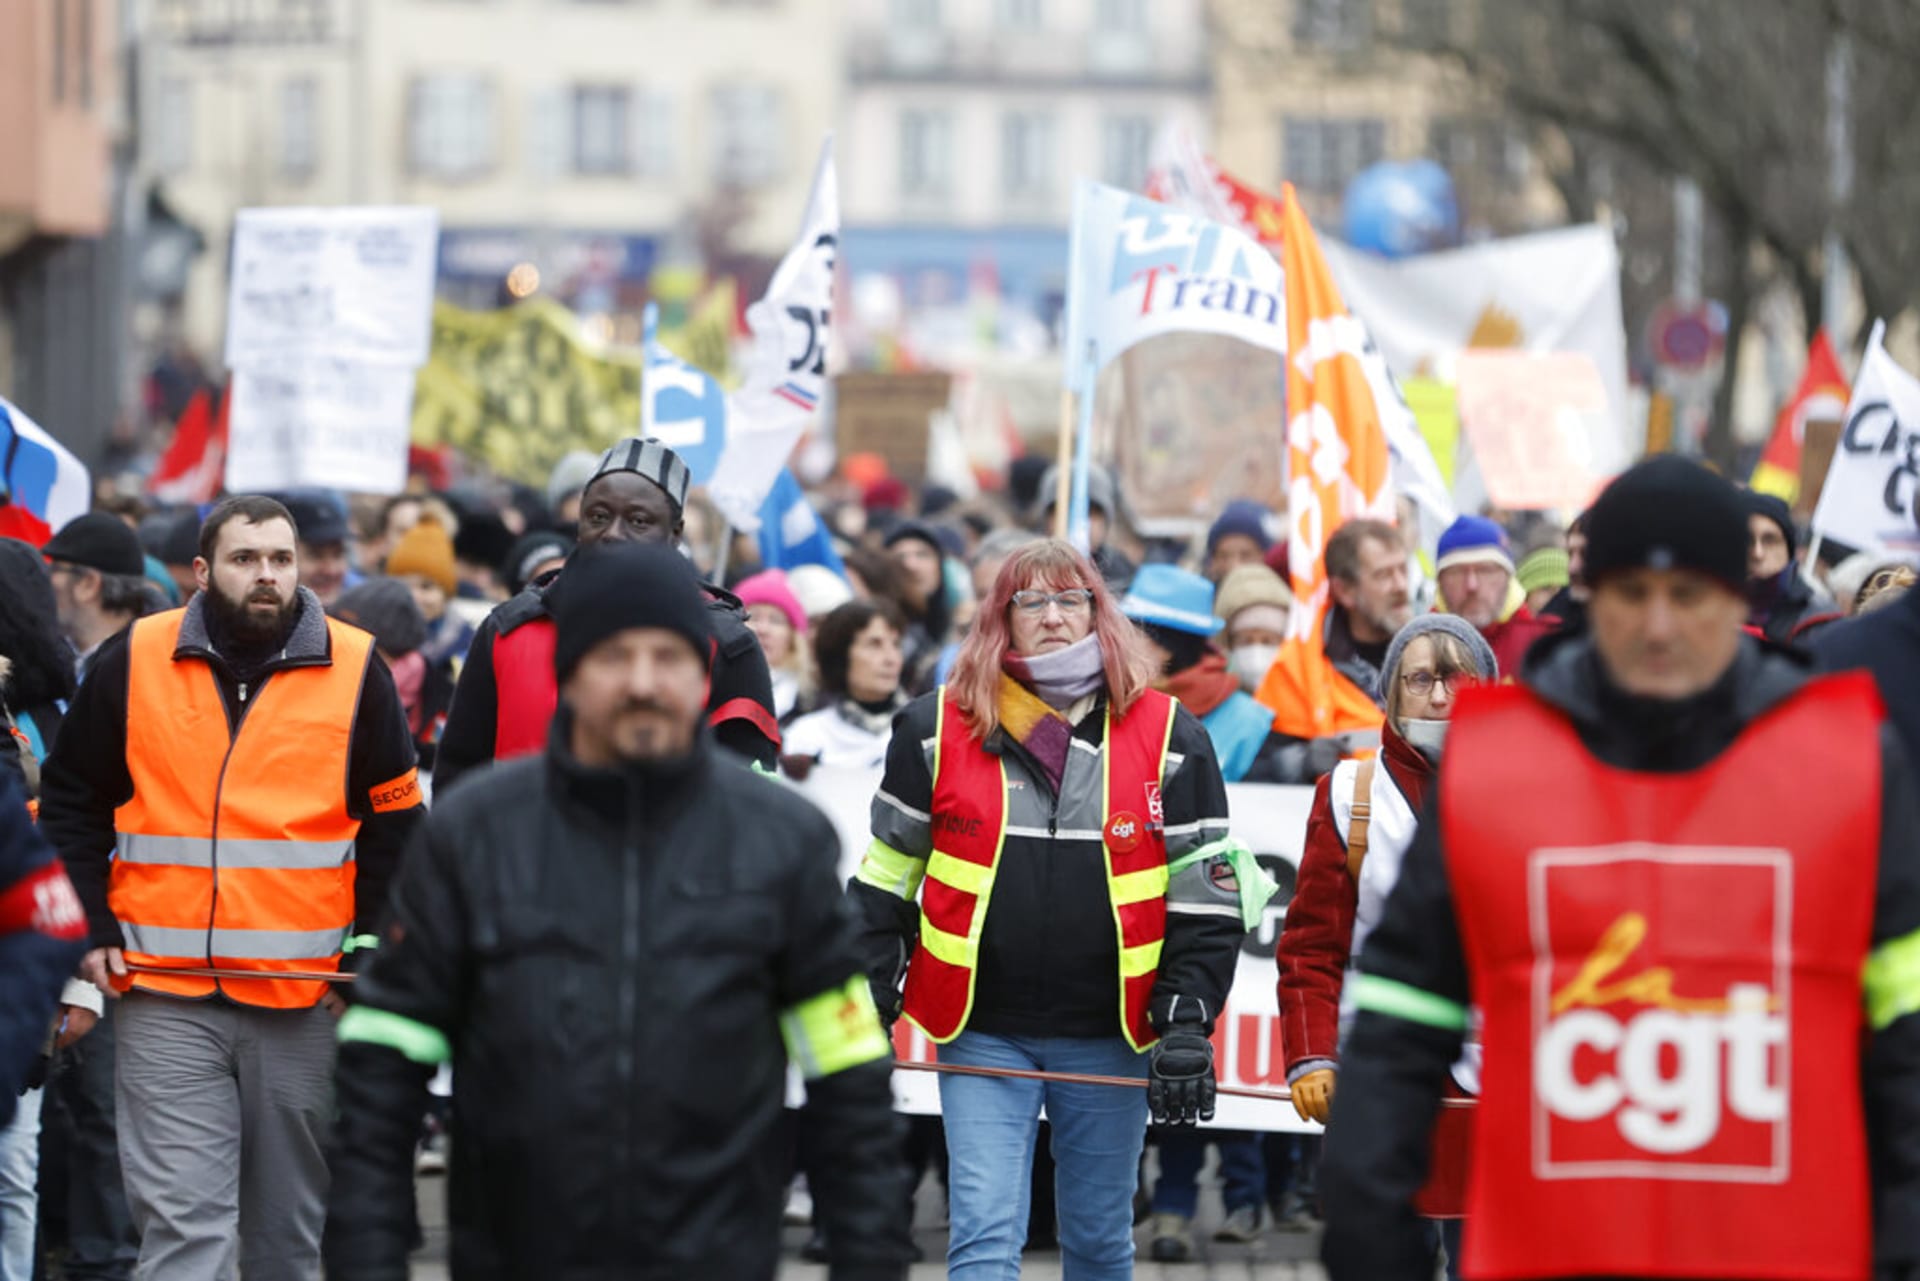 Demonstranti se účastní protestního pochodu proti plánům na posunutí věku odchodu do důchodu ve Štrasburku na východě Francie, 31. ledna 2023.